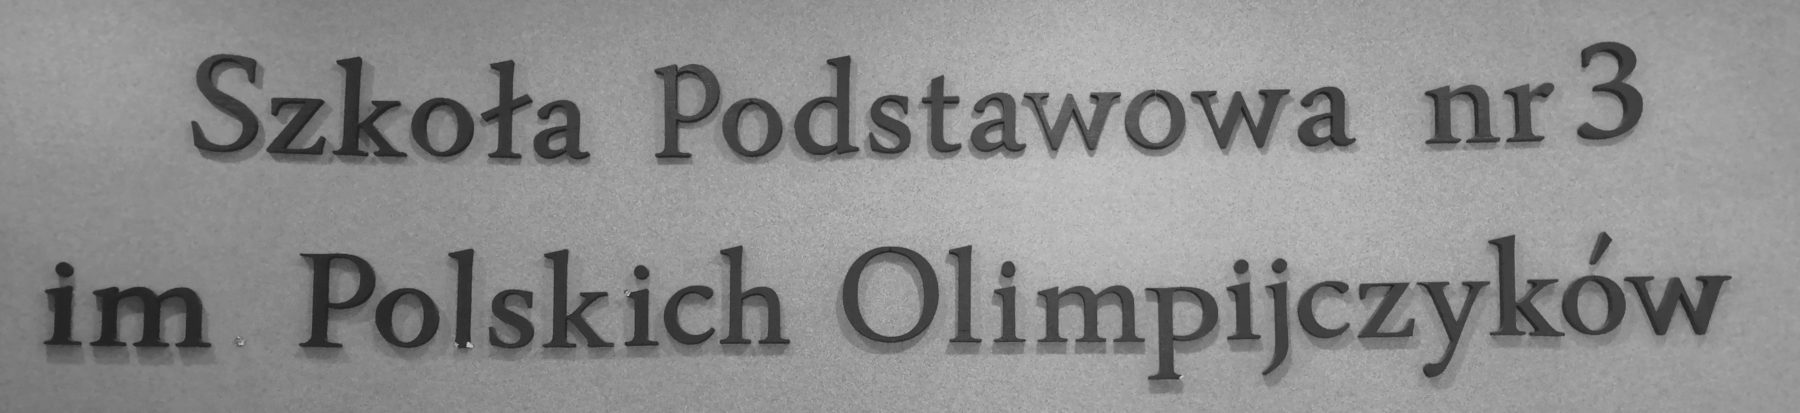 Szkoła Podstawowa nr 3 im. Polskich Olimpijczyków w Ciechocinku